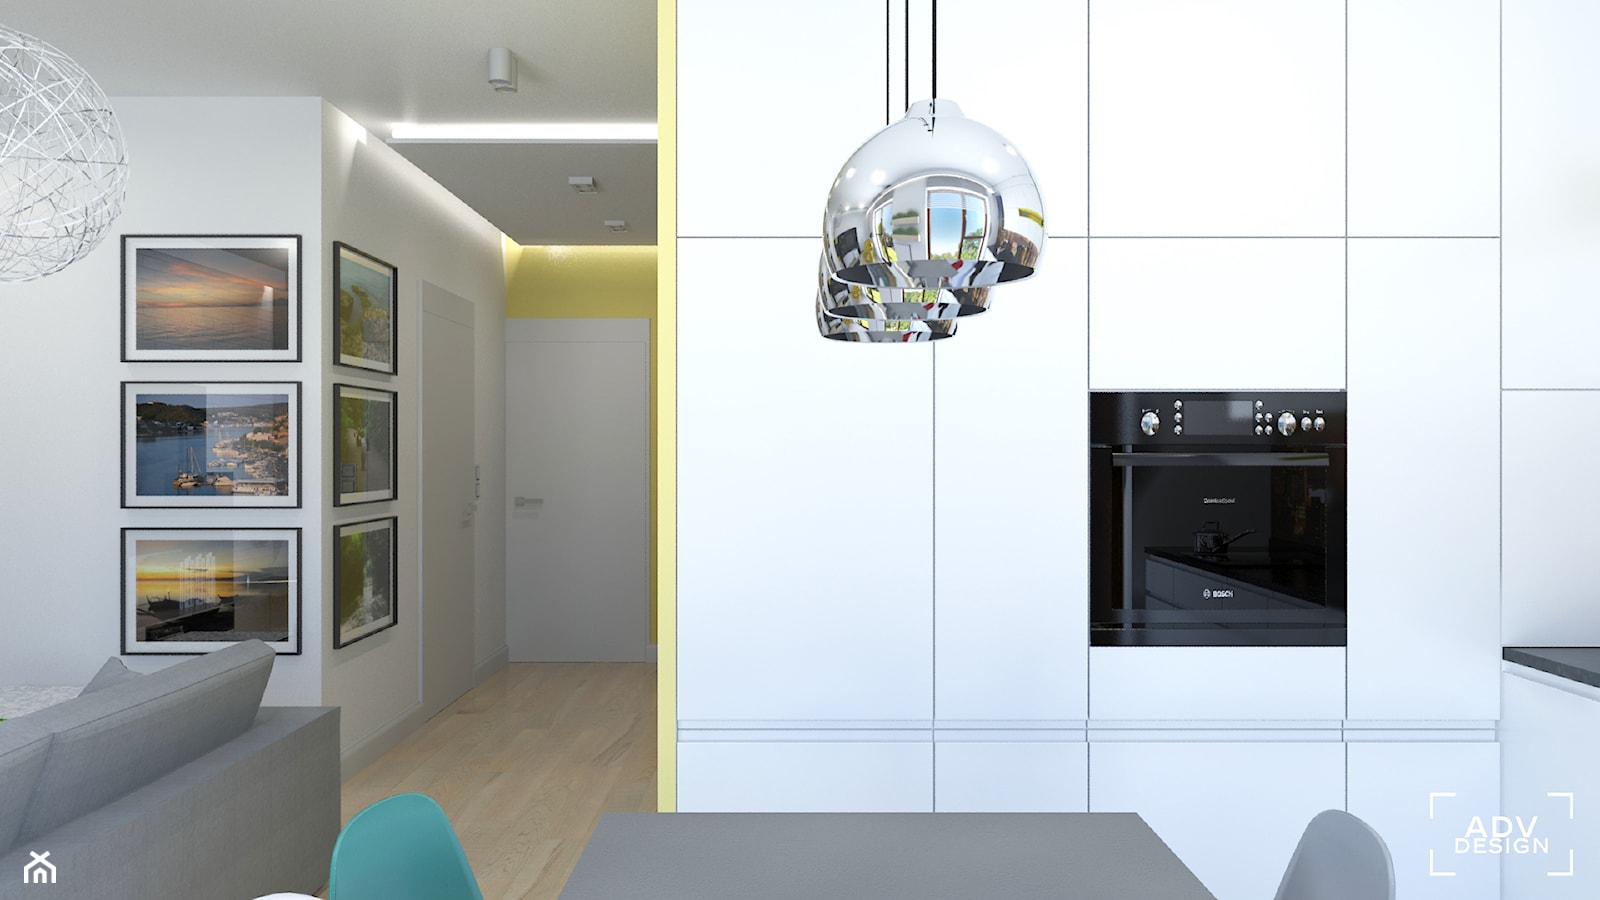 76 m2 - Kuchnia, styl nowoczesny - zdjęcie od ADV Design - Homebook